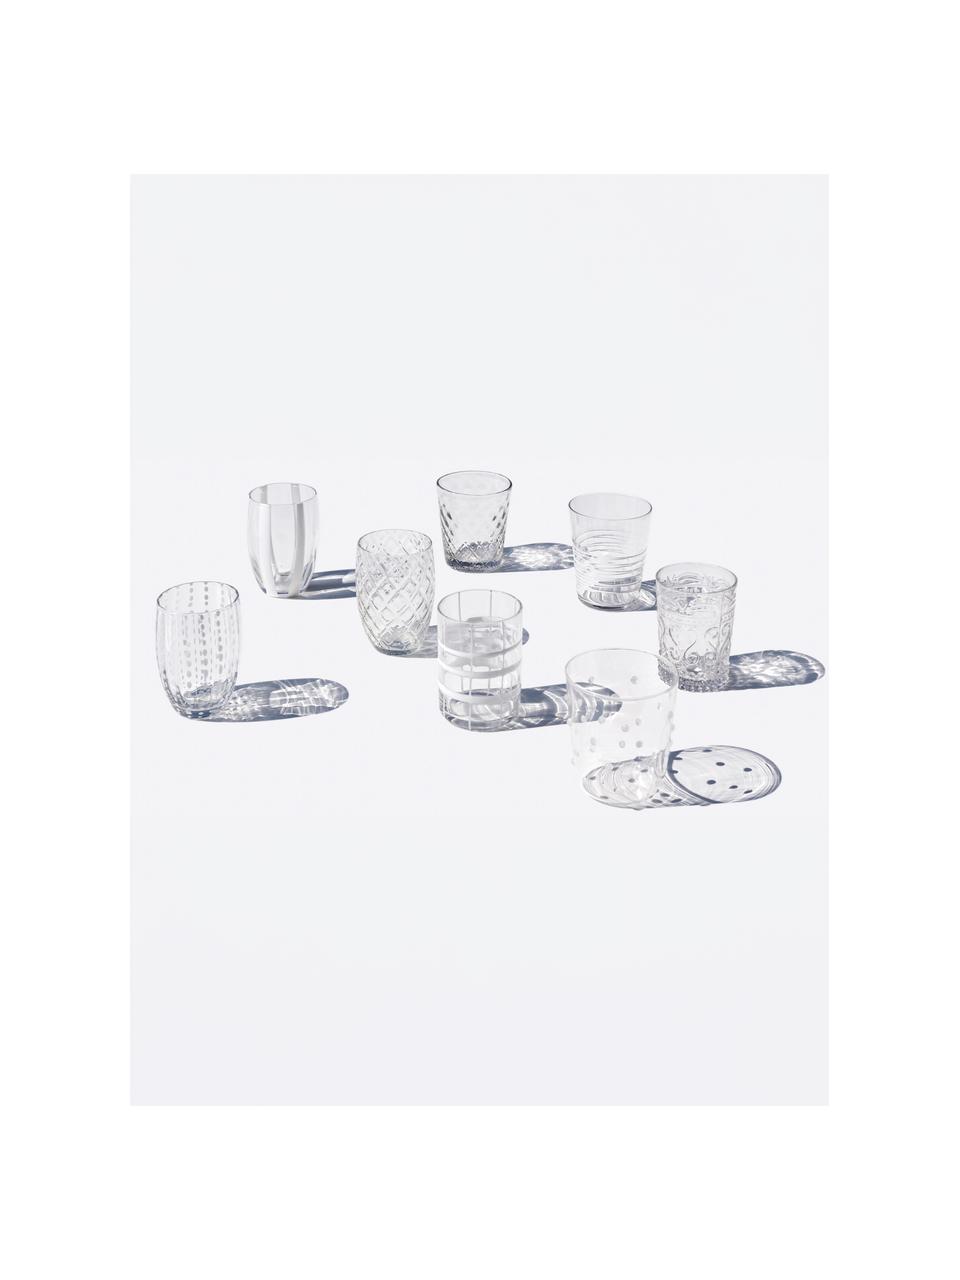 Handgefertigte Wassergläser Melting, 6er-Set, Glas, Weiß, transparent, Set mit verschiedenen Größen